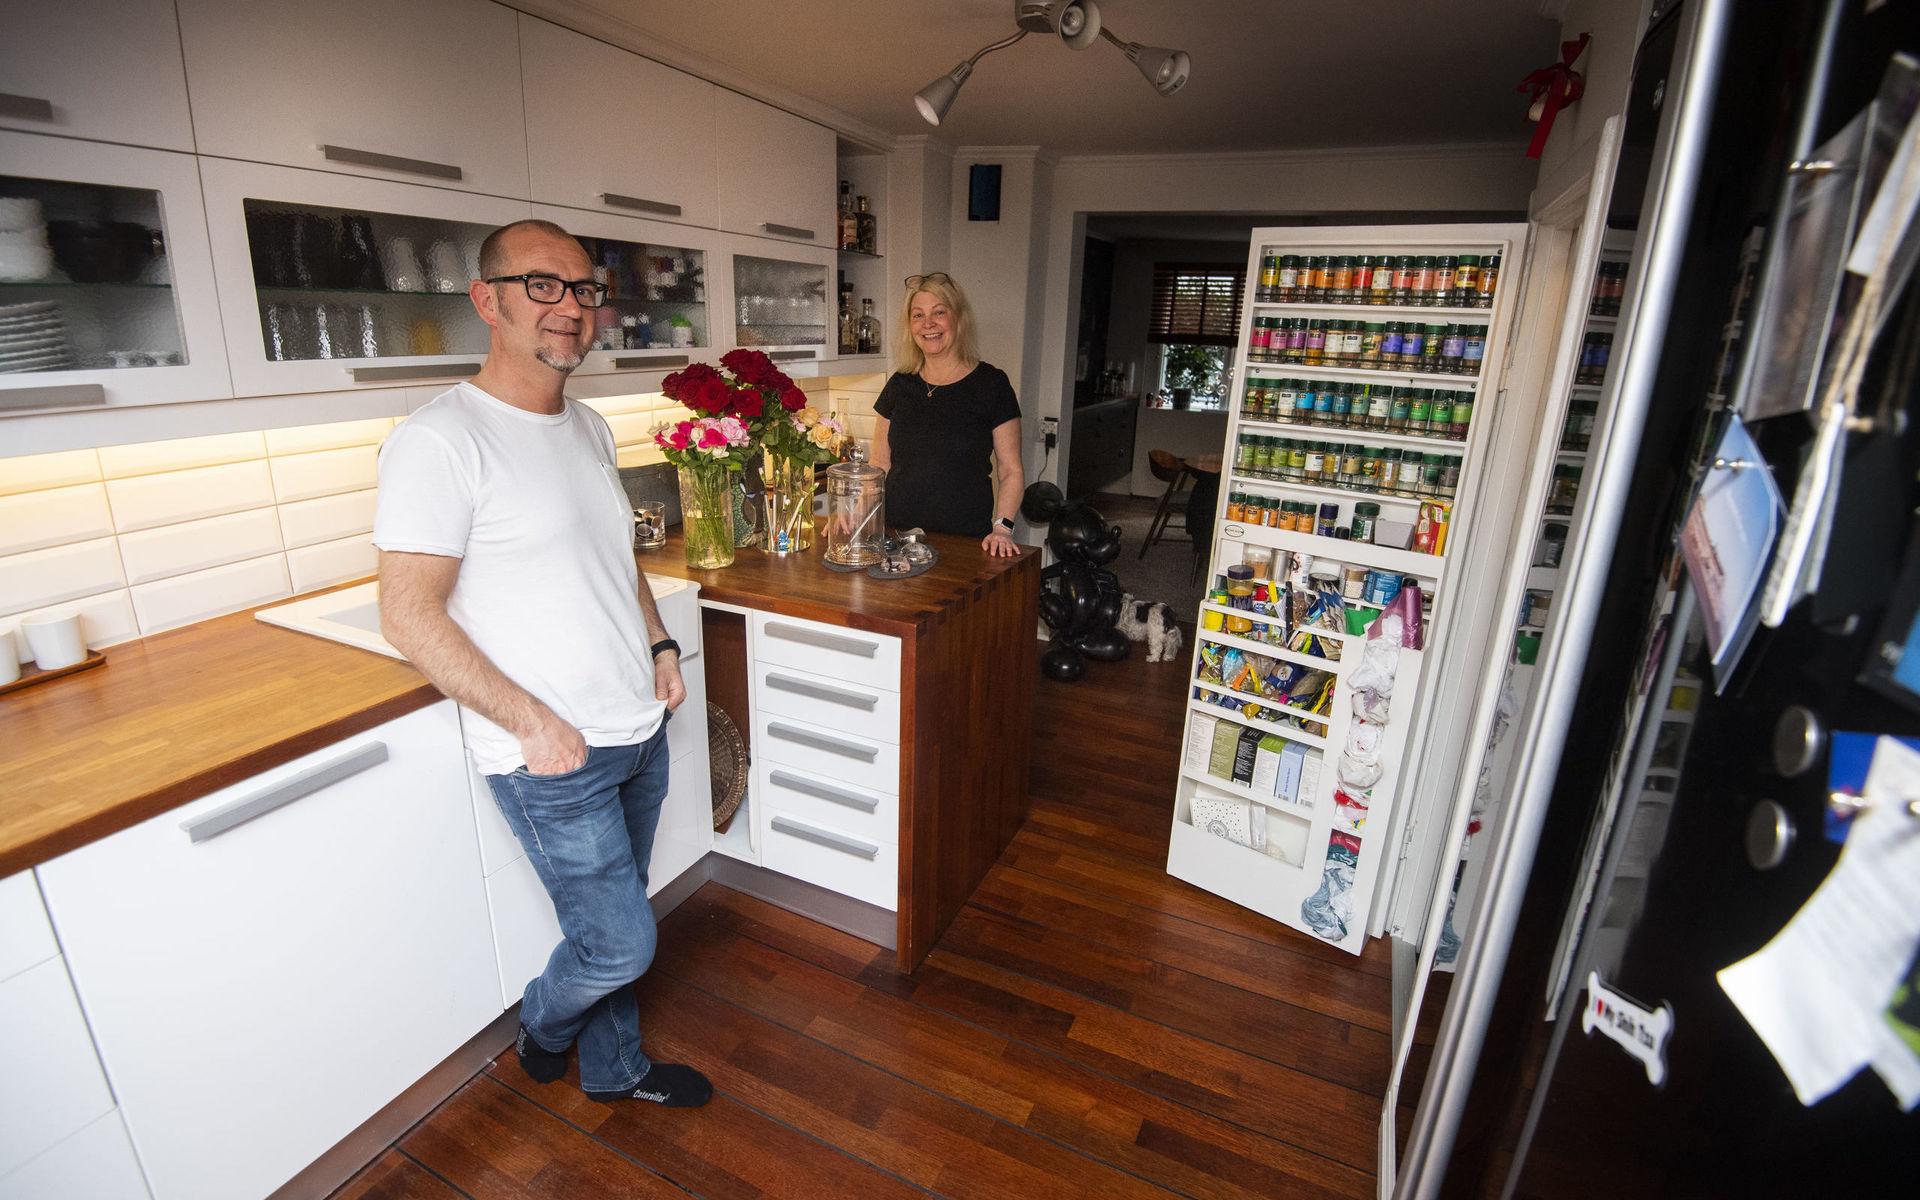 2006 byggde Håkan och Jeanette om köket, som hänger ihop med det kombinerade mat- och vardagsrummet. 